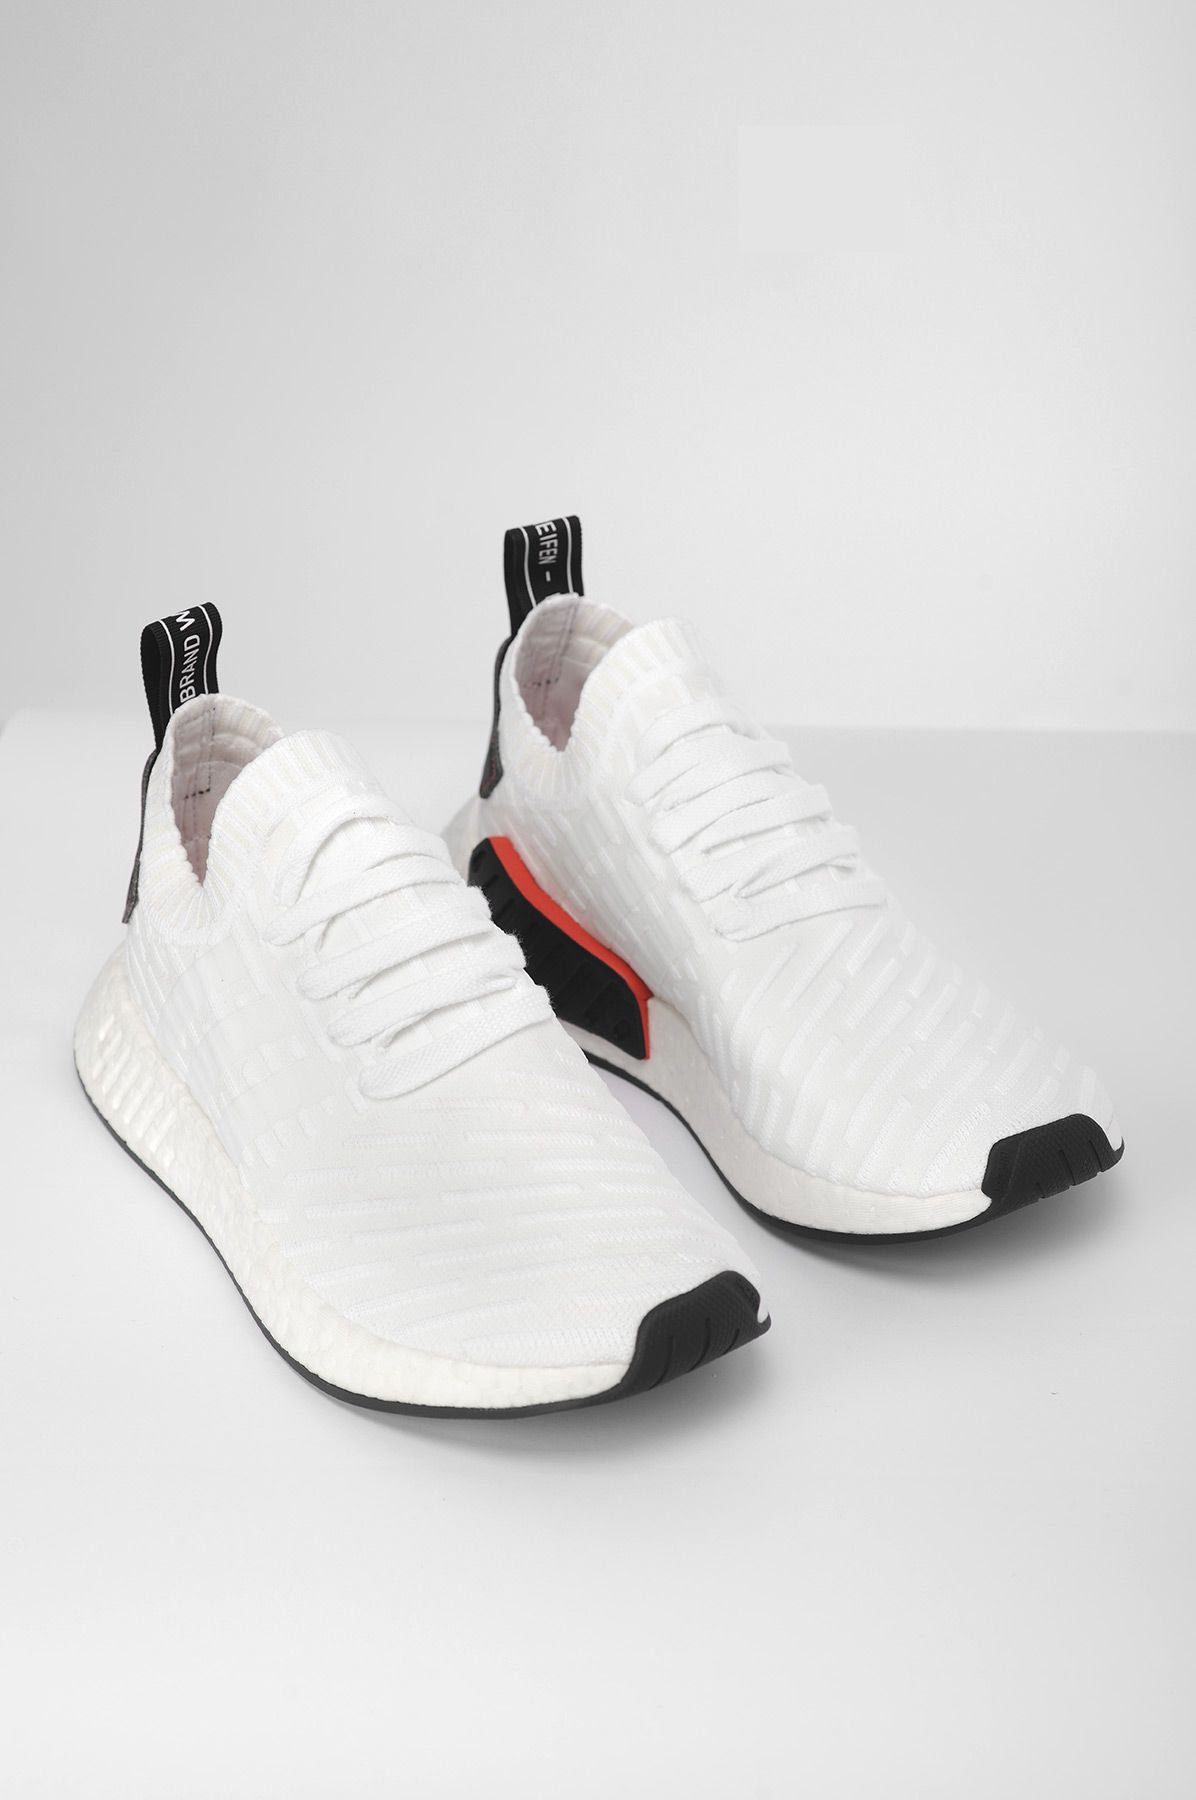 adidas NMD R2 White/Black // Available | Nice Kicks